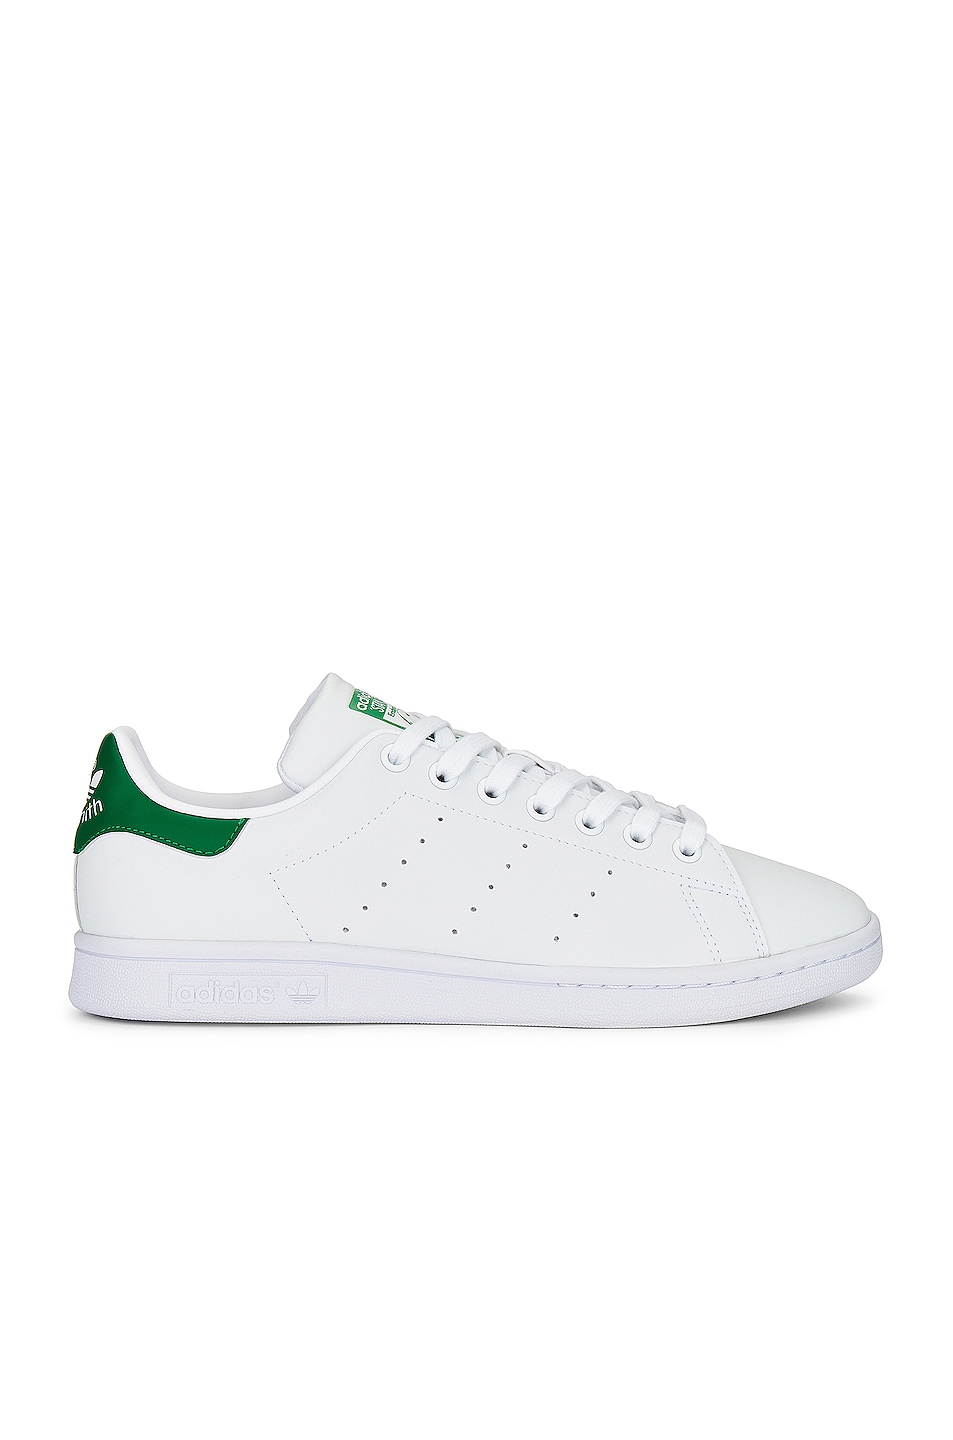 Кроссовки Adidas Originals Stan Smith, цвет White & Green кроссовки adidas originals stan smith unisex white green